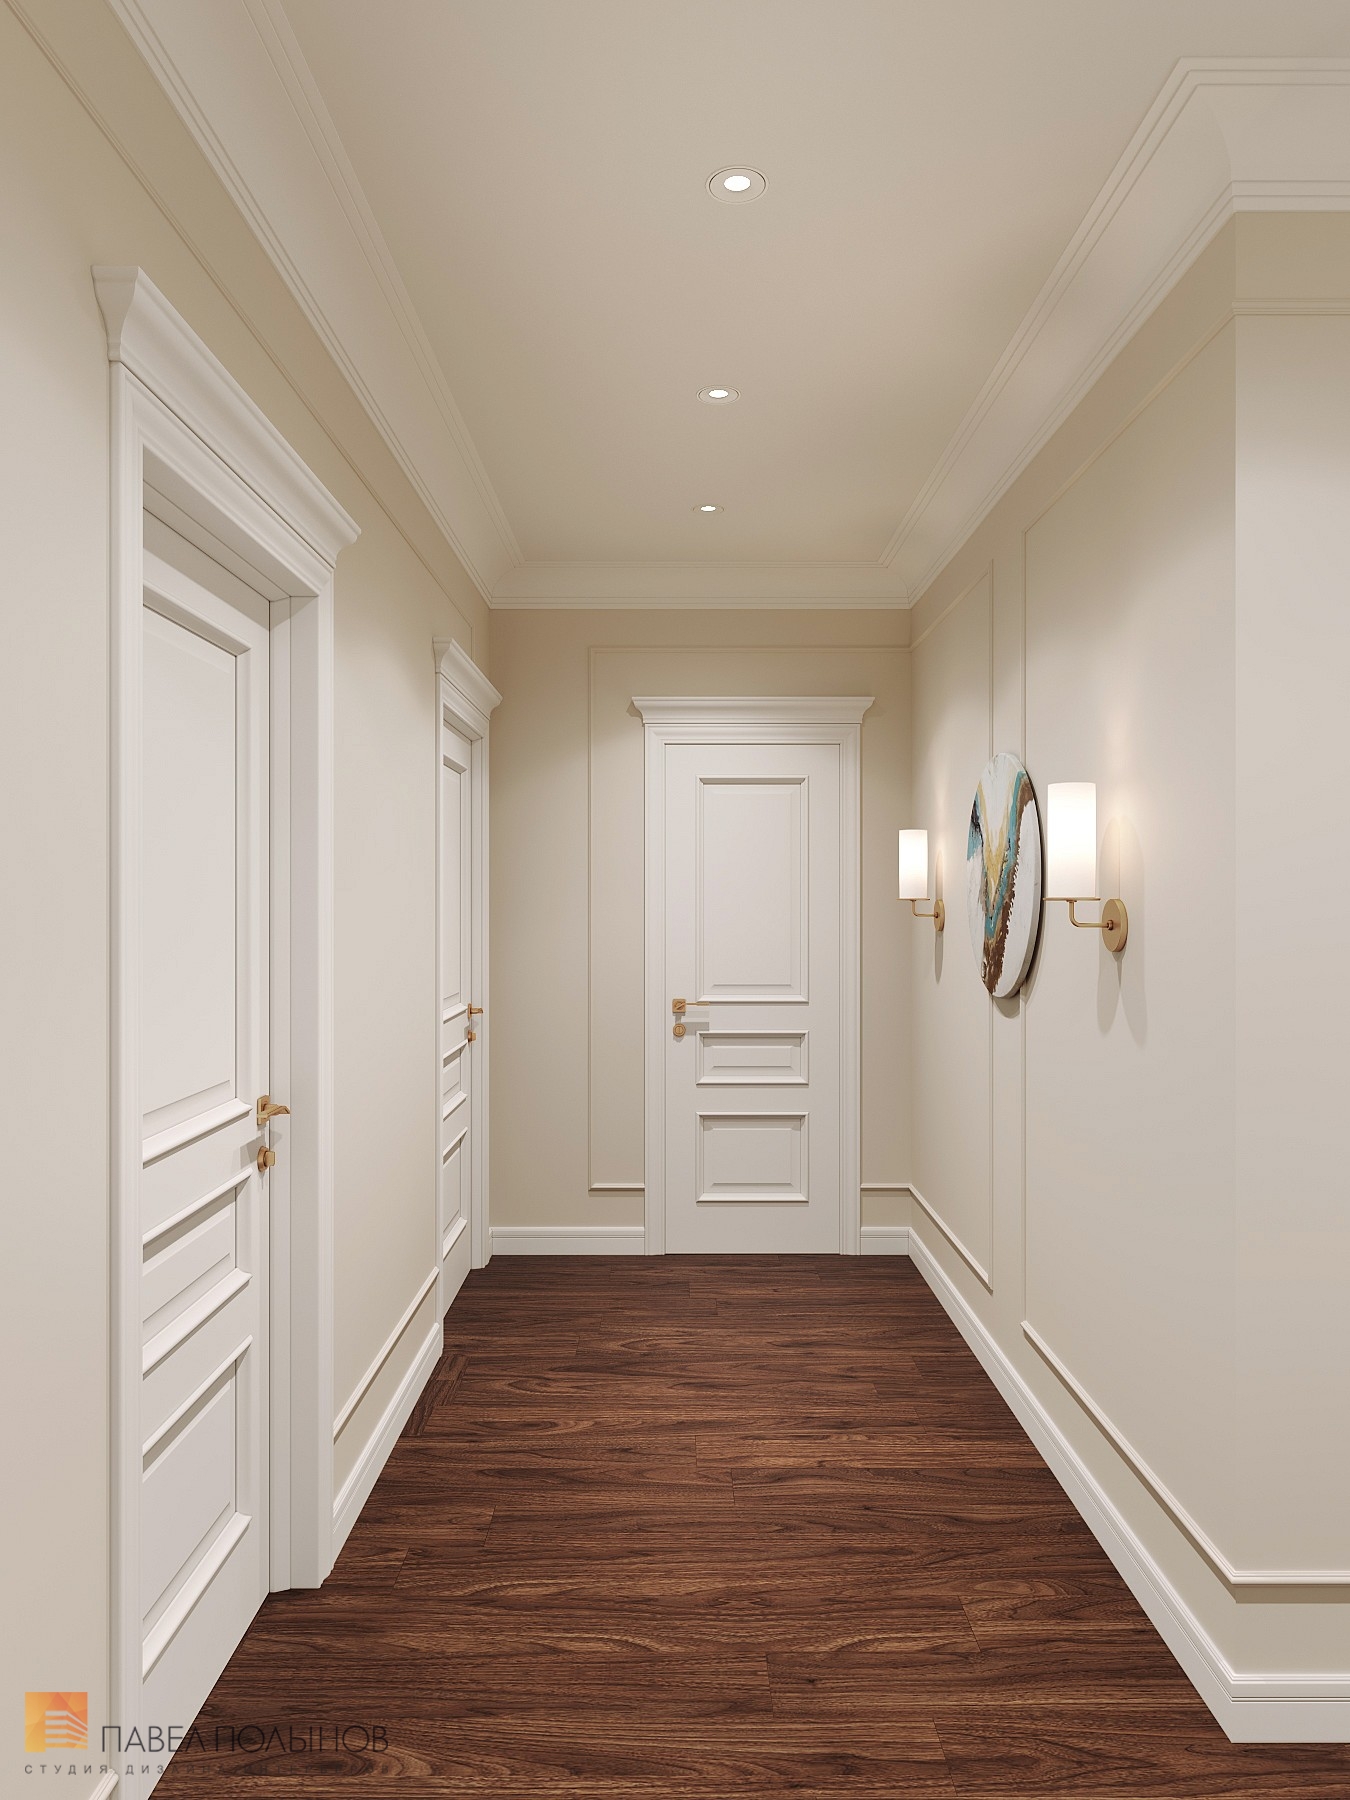 Фото дизайн коридора из проекта «Интерьер квартиры 200 кв.м. в стиле Ар-деко, ЖК «Граф Орлов»»